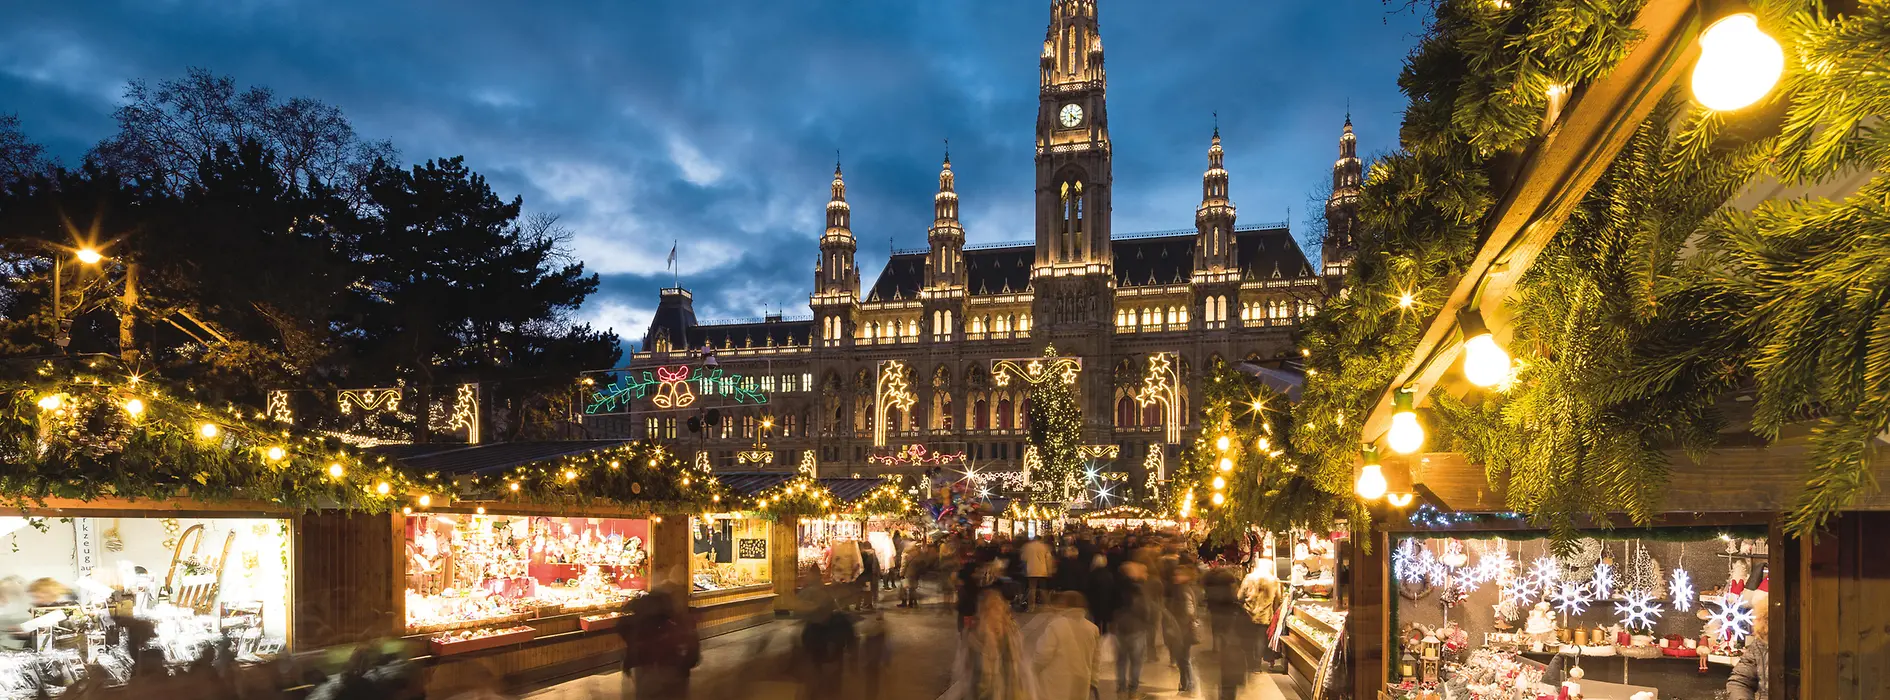 Viennese Christmas Market on Rathausplatz, evening, illumination